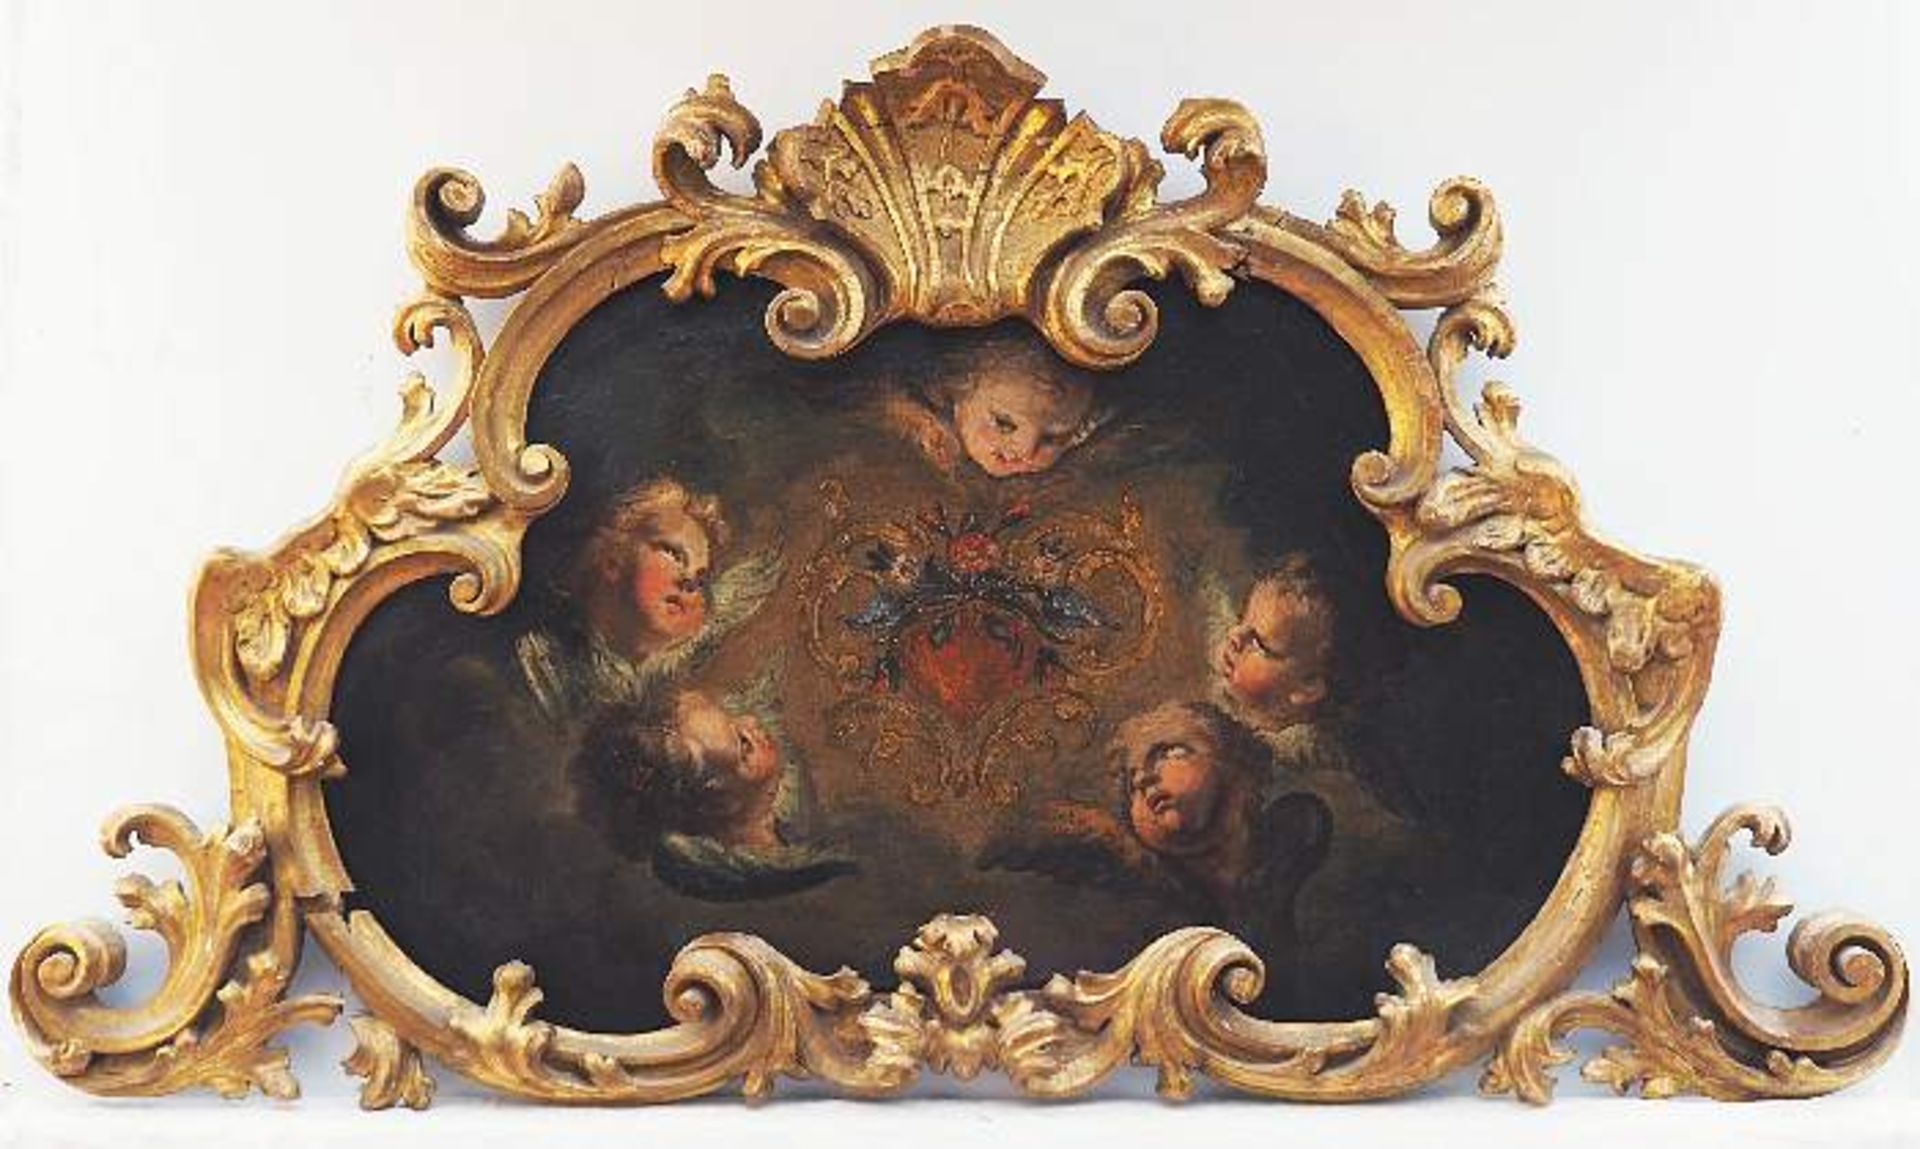 Unbekannter Künstler des Barock, 2. Hälfte 18. Jahrhundert. Öl auf Leinwand, mit fünf Engelköpf